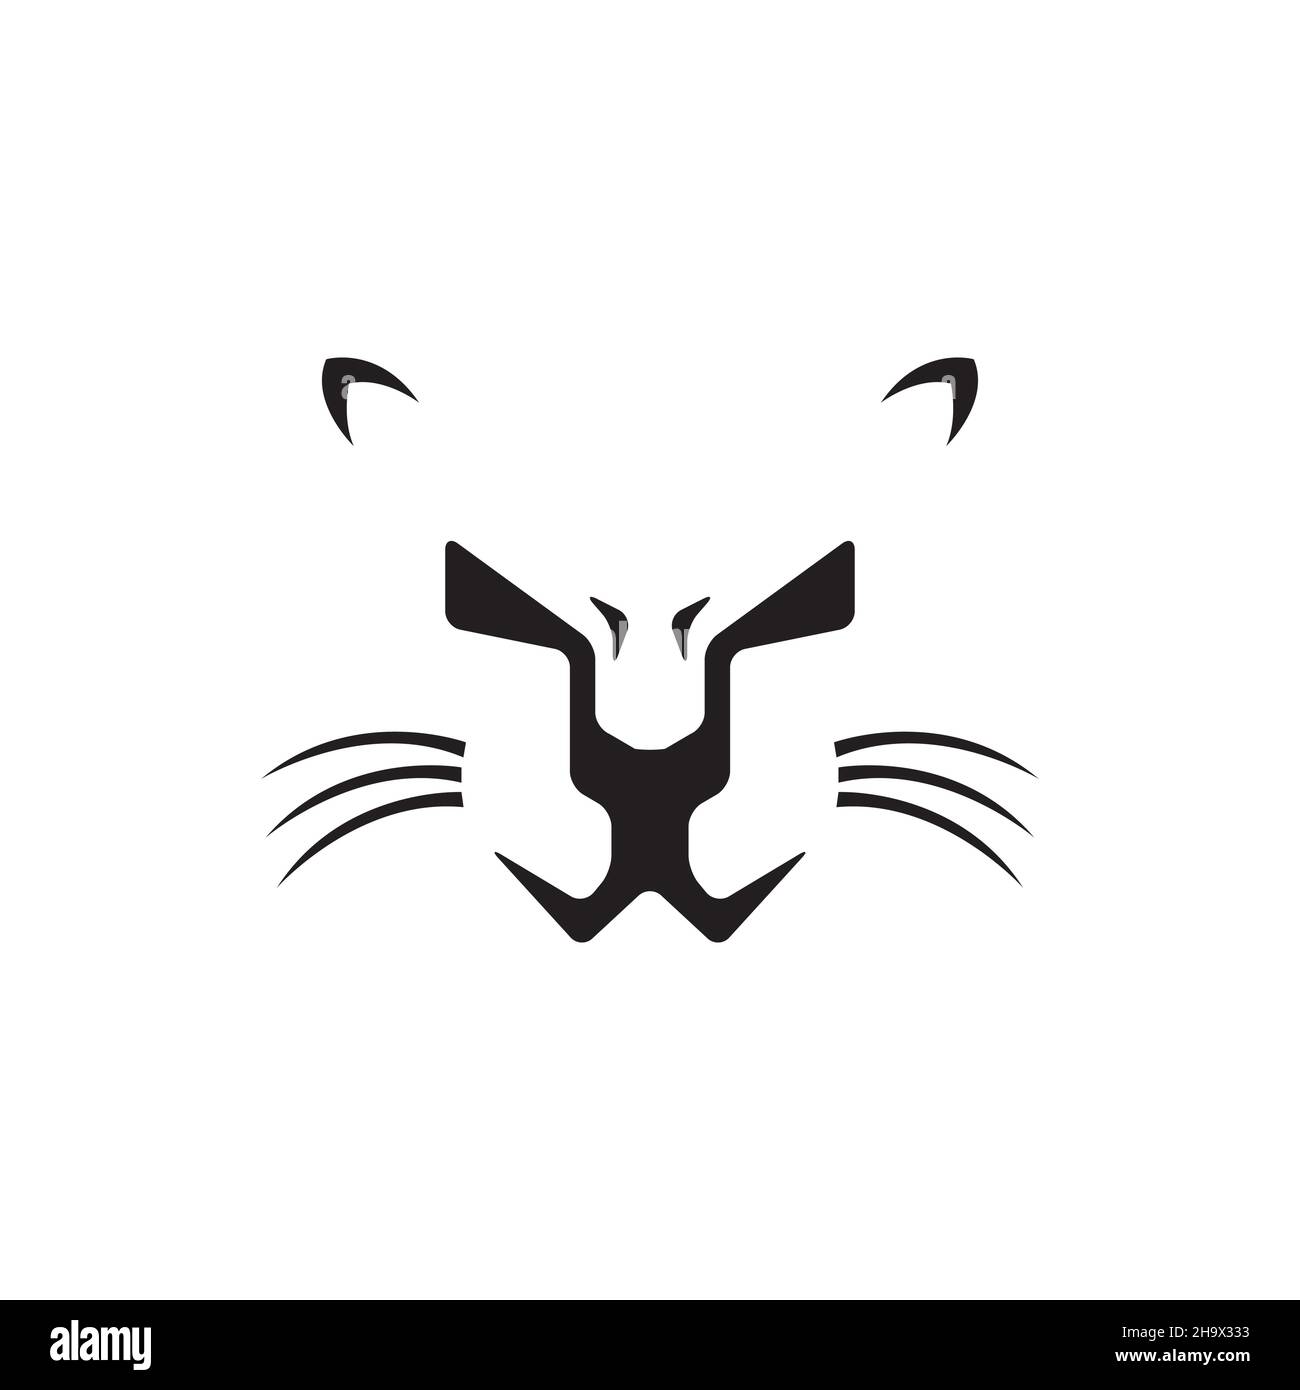 face of leopard or puma logo symbol icon vector graphic design illustration idea creative Stock Vector